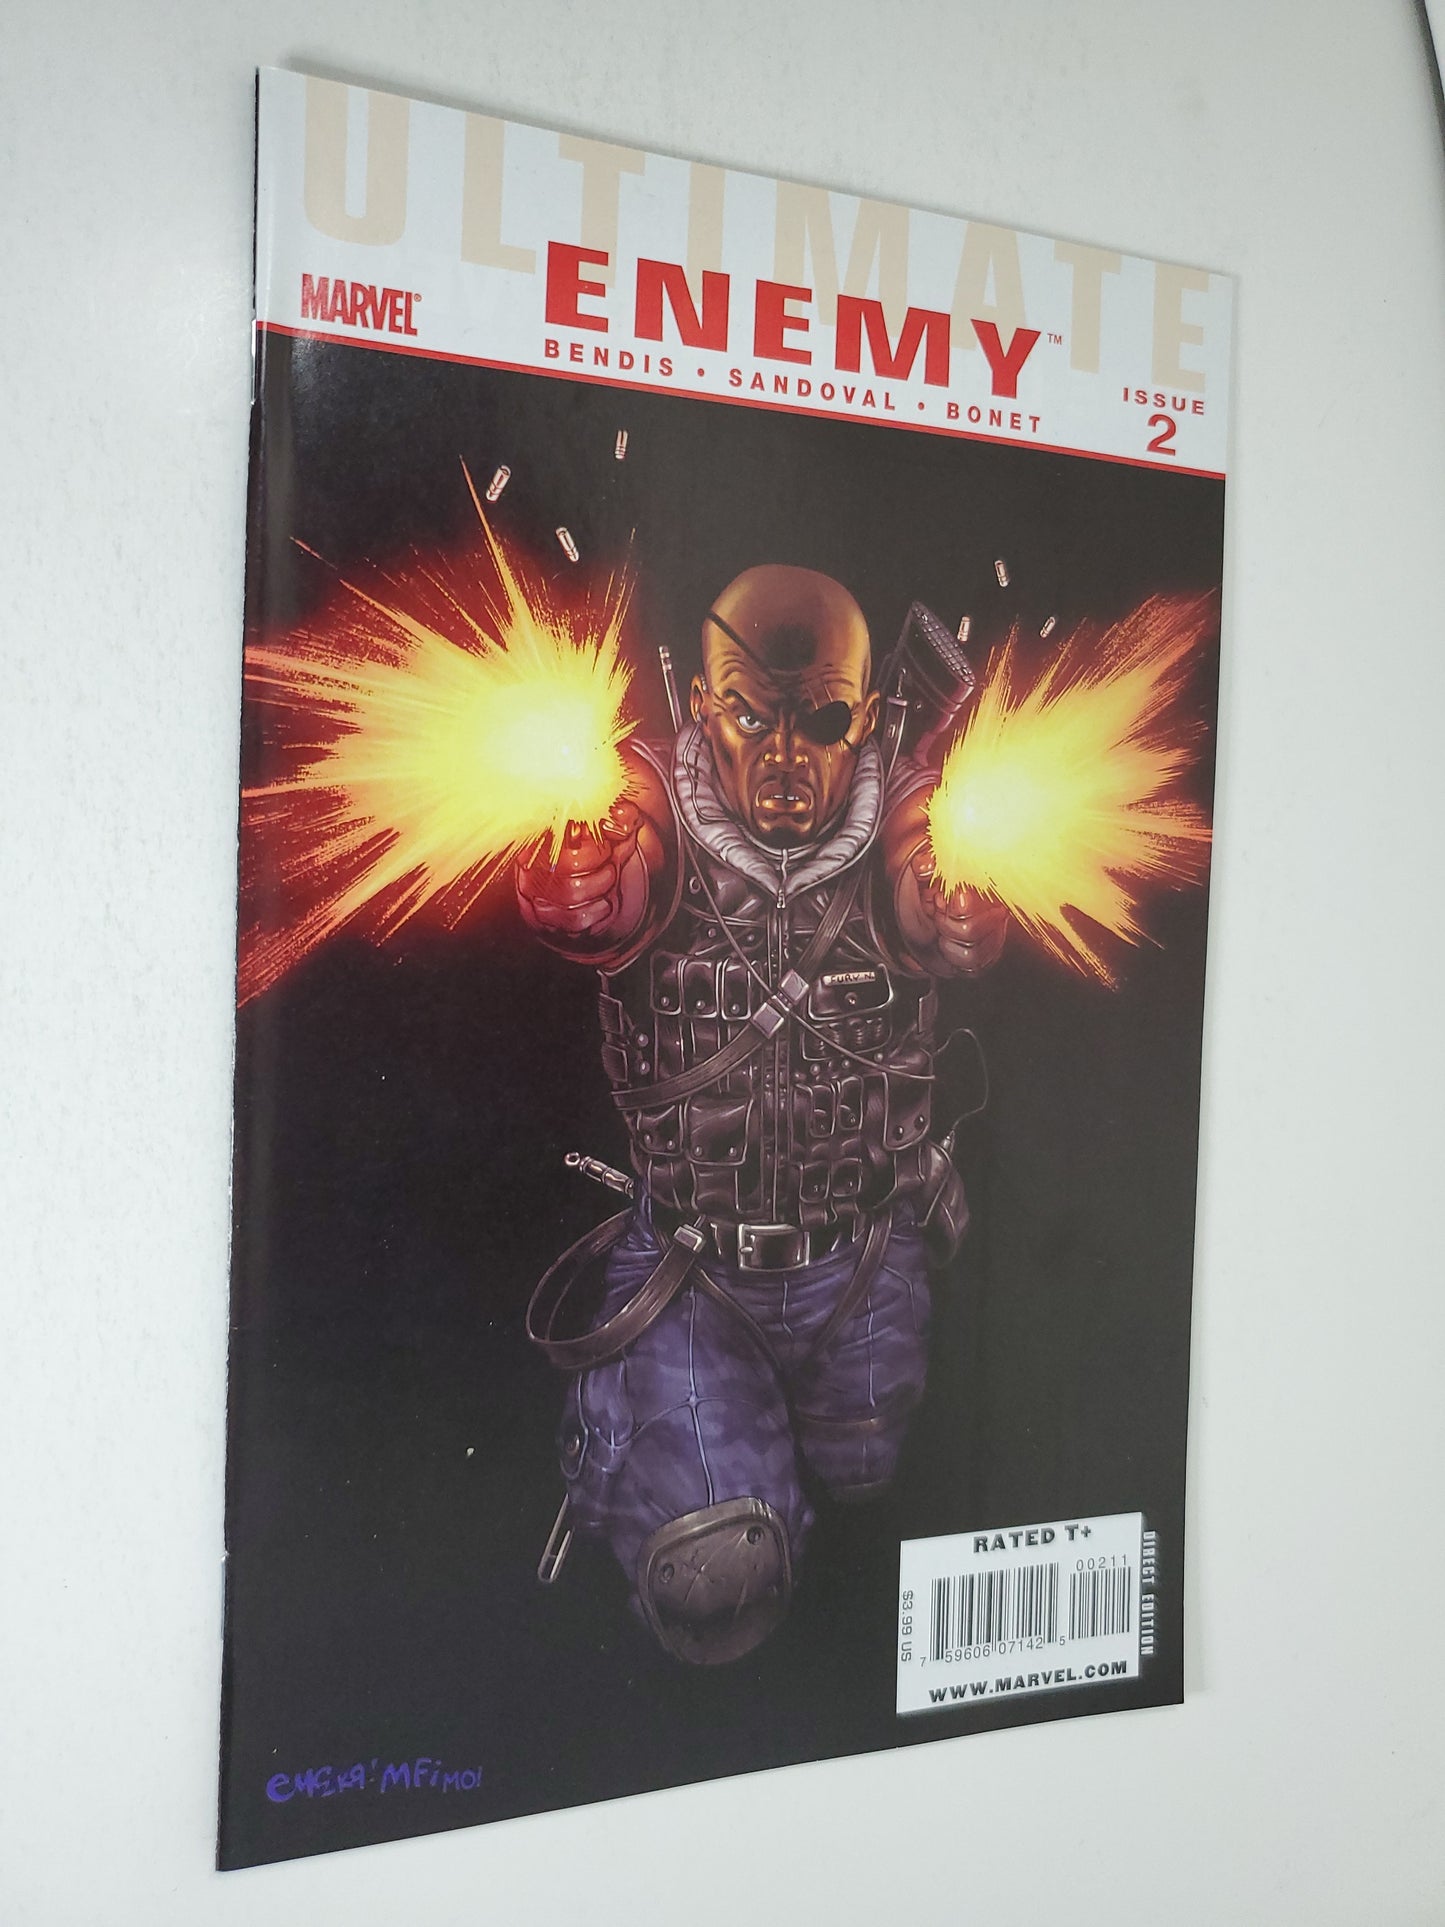 Marvel Ultimate Enemy SET Vol 1 #1-4